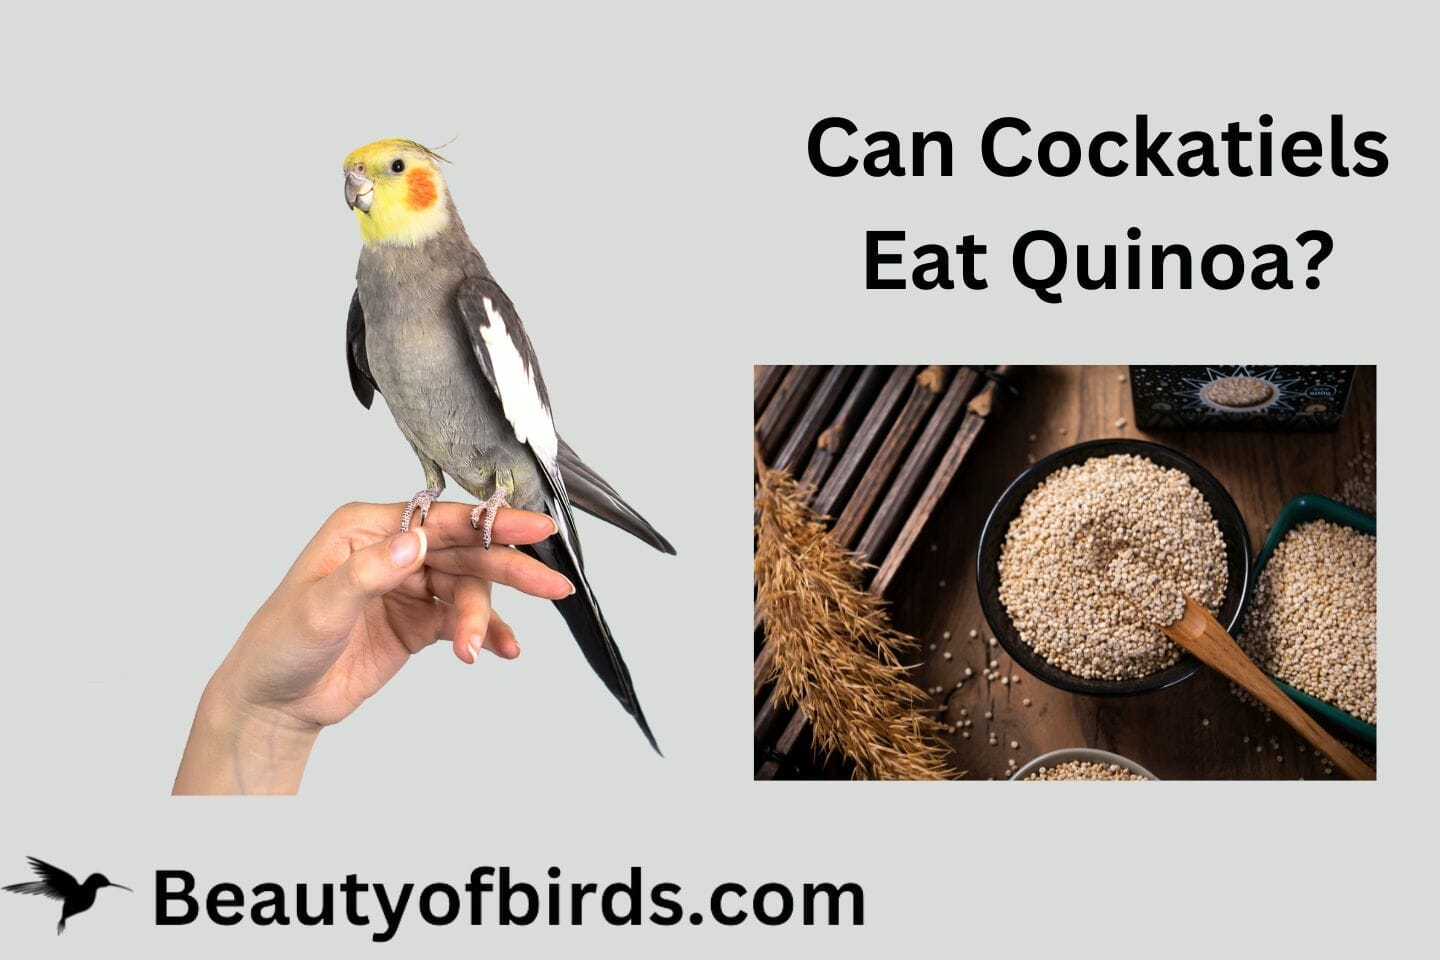 Can Cockatiels Eat Quinoa